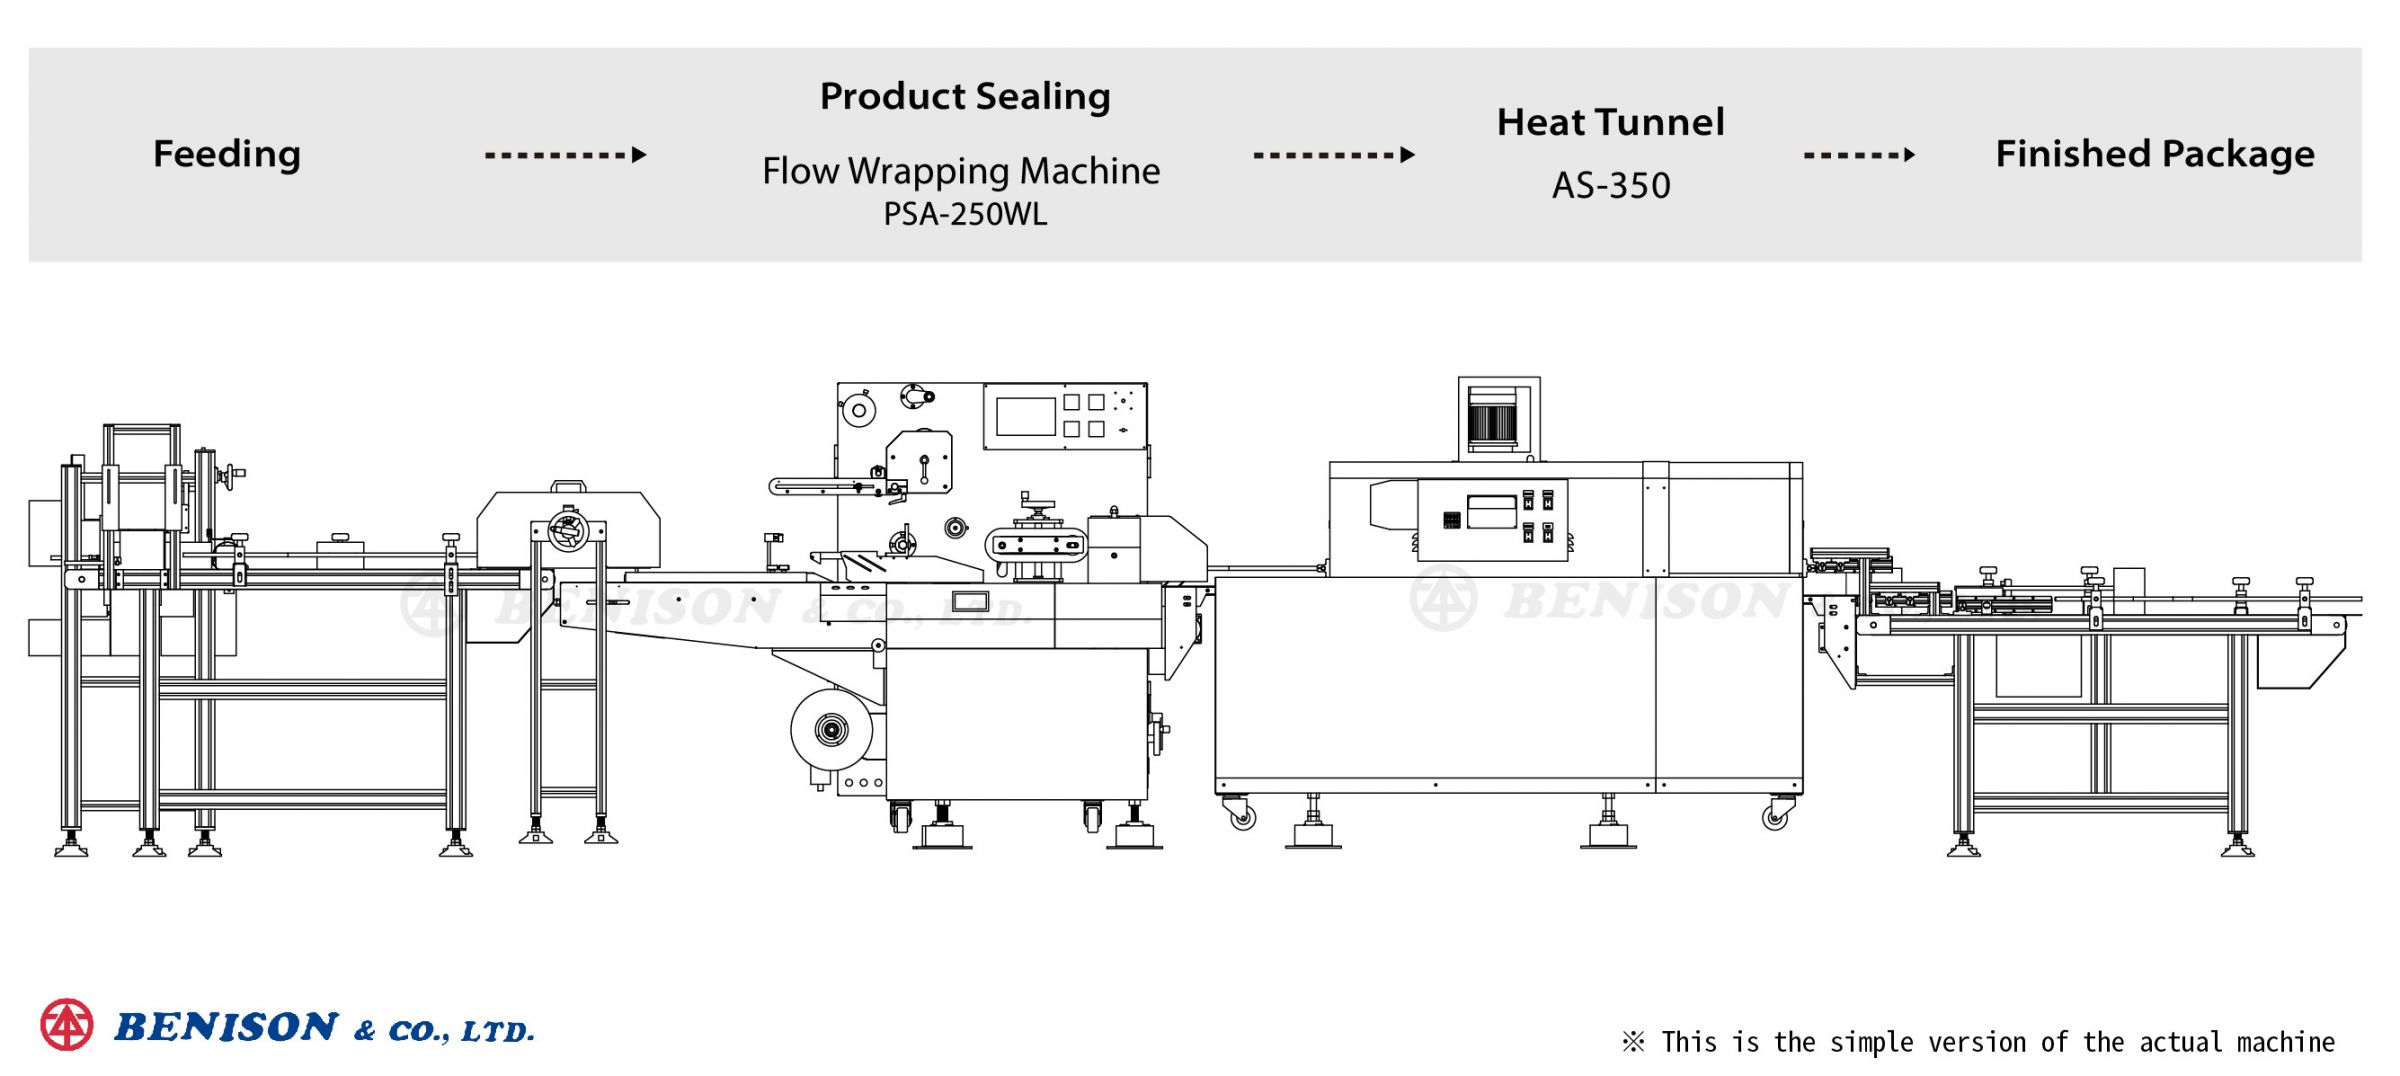 آلة تغليف تدفق PSA-250WL لحلول منتجات الأعشاب الصينية